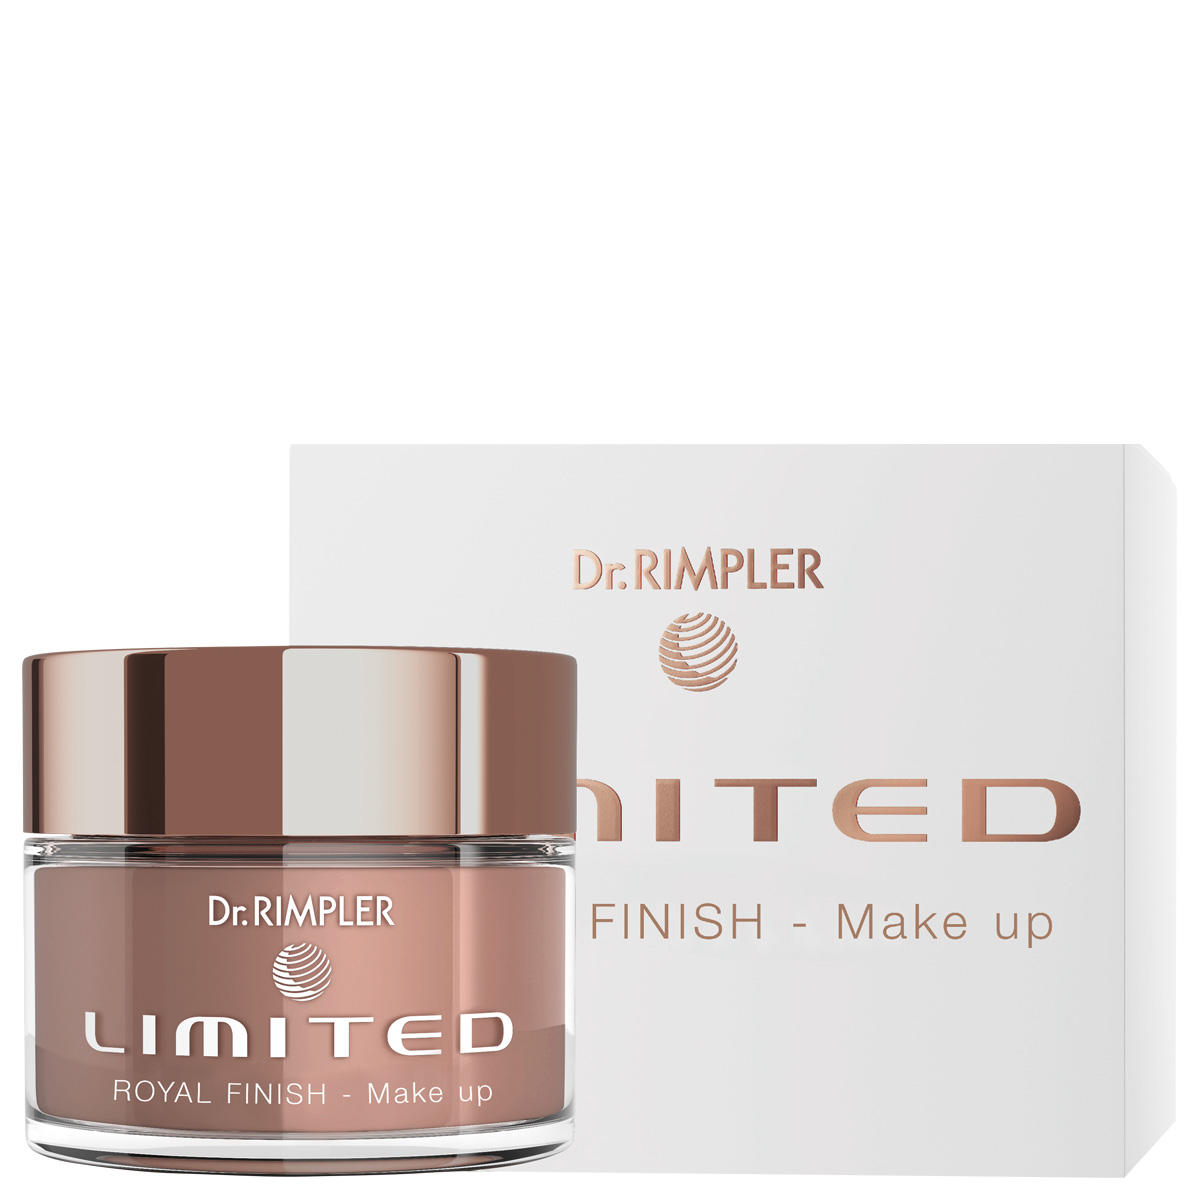 Dr. RIMPLER LIMITED Royal Finish Make up 30 ml - 2